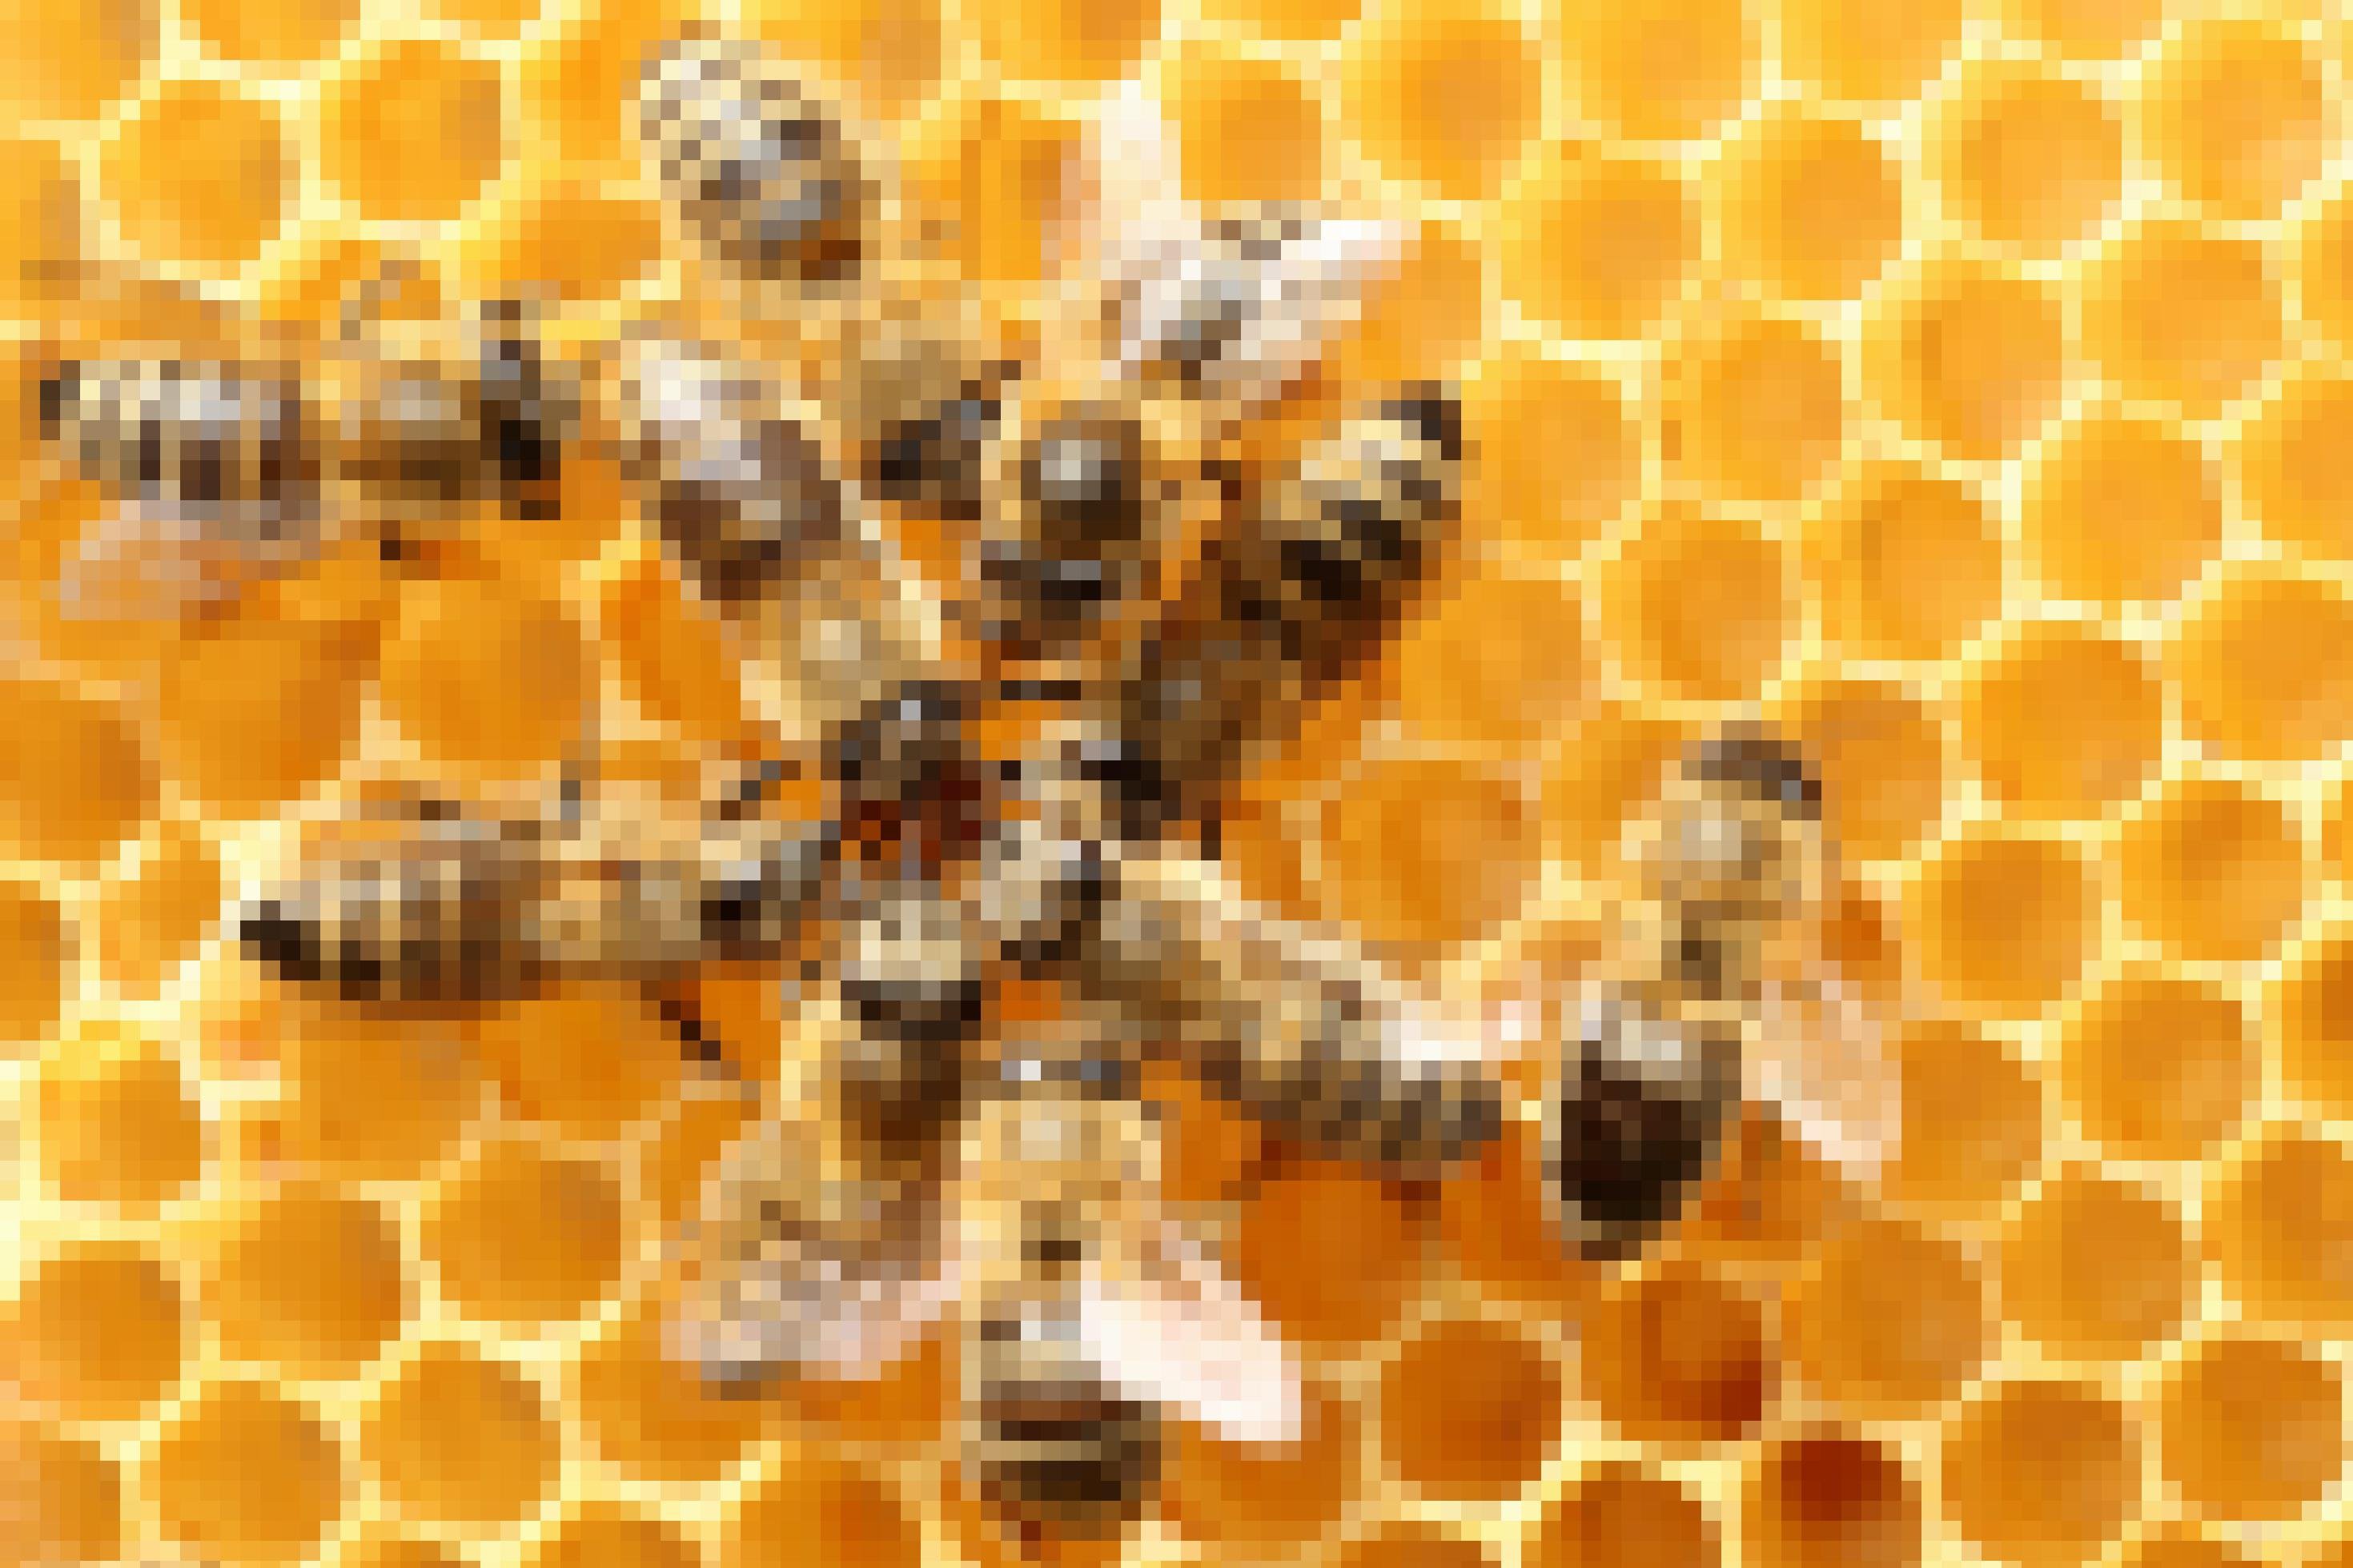 Auf Honigwaben befinden sich 10 Bienen, die sich teilweise berühren und umeinander gruppieren..